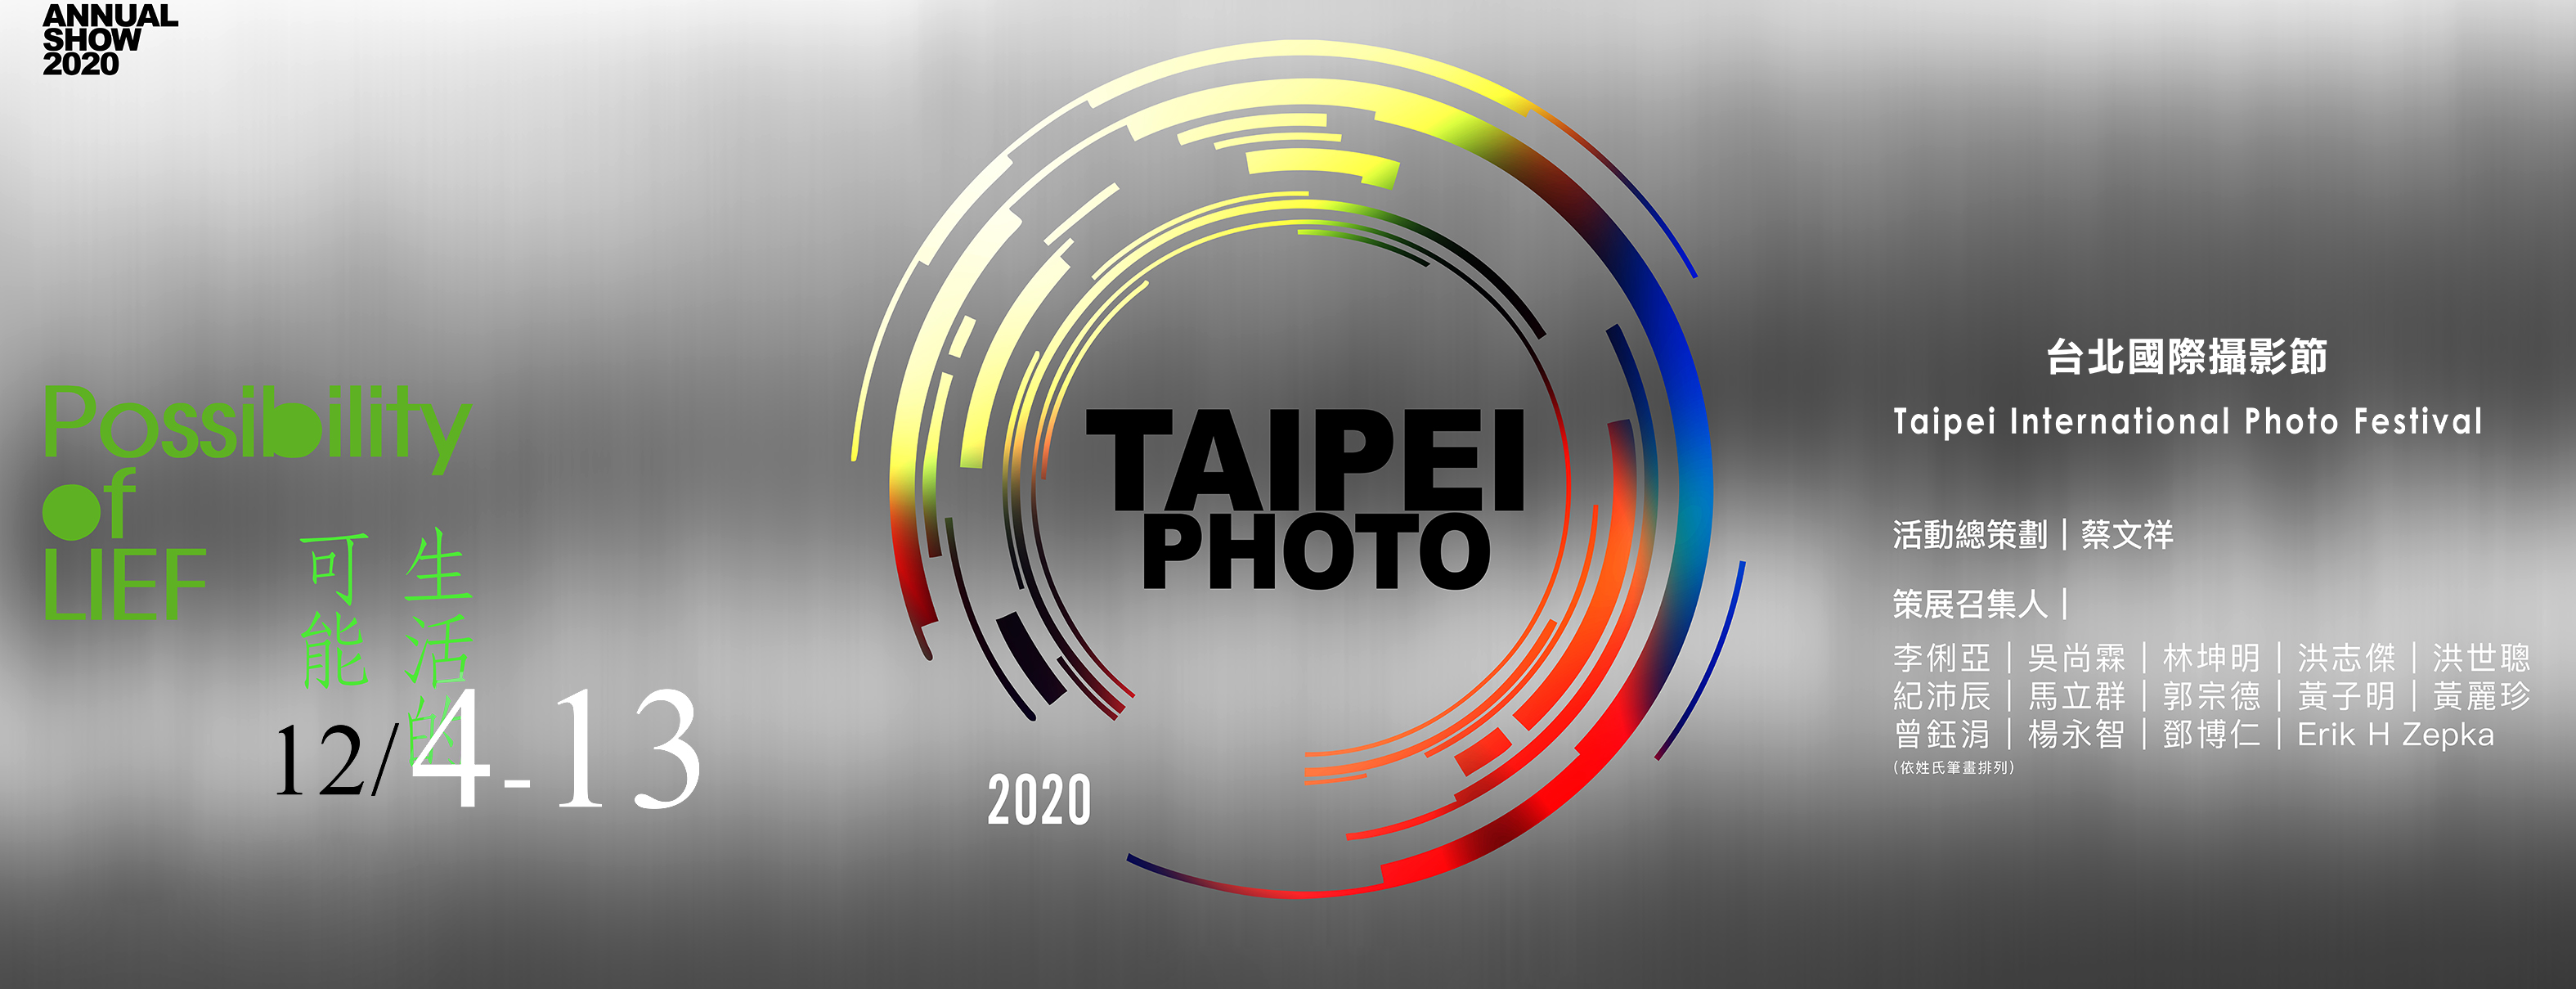 taipei photo banner updated